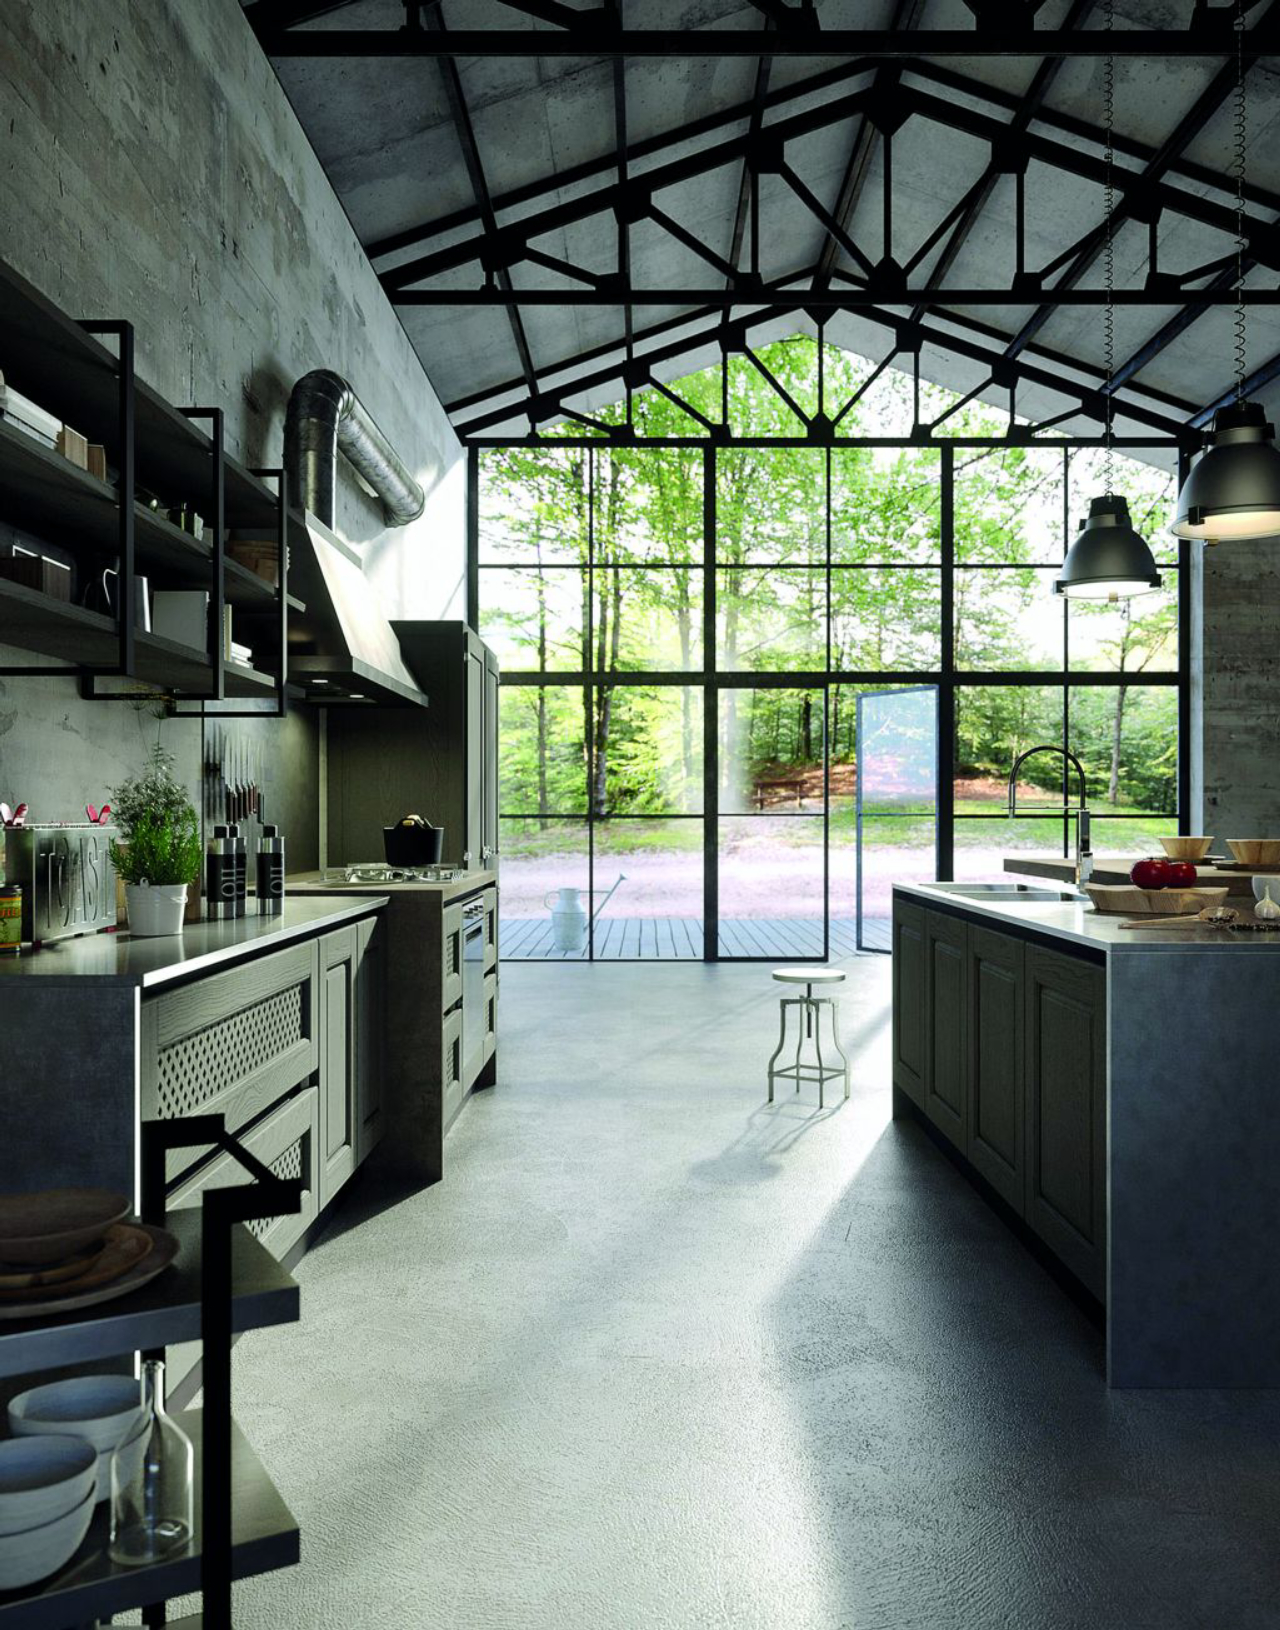 Cozinha da Bellagio combina móveis em cores sóbrias e com pegada industrial. Detalhe para as estantes aéreas feitas em metal.<br>Fotos: Divulgação